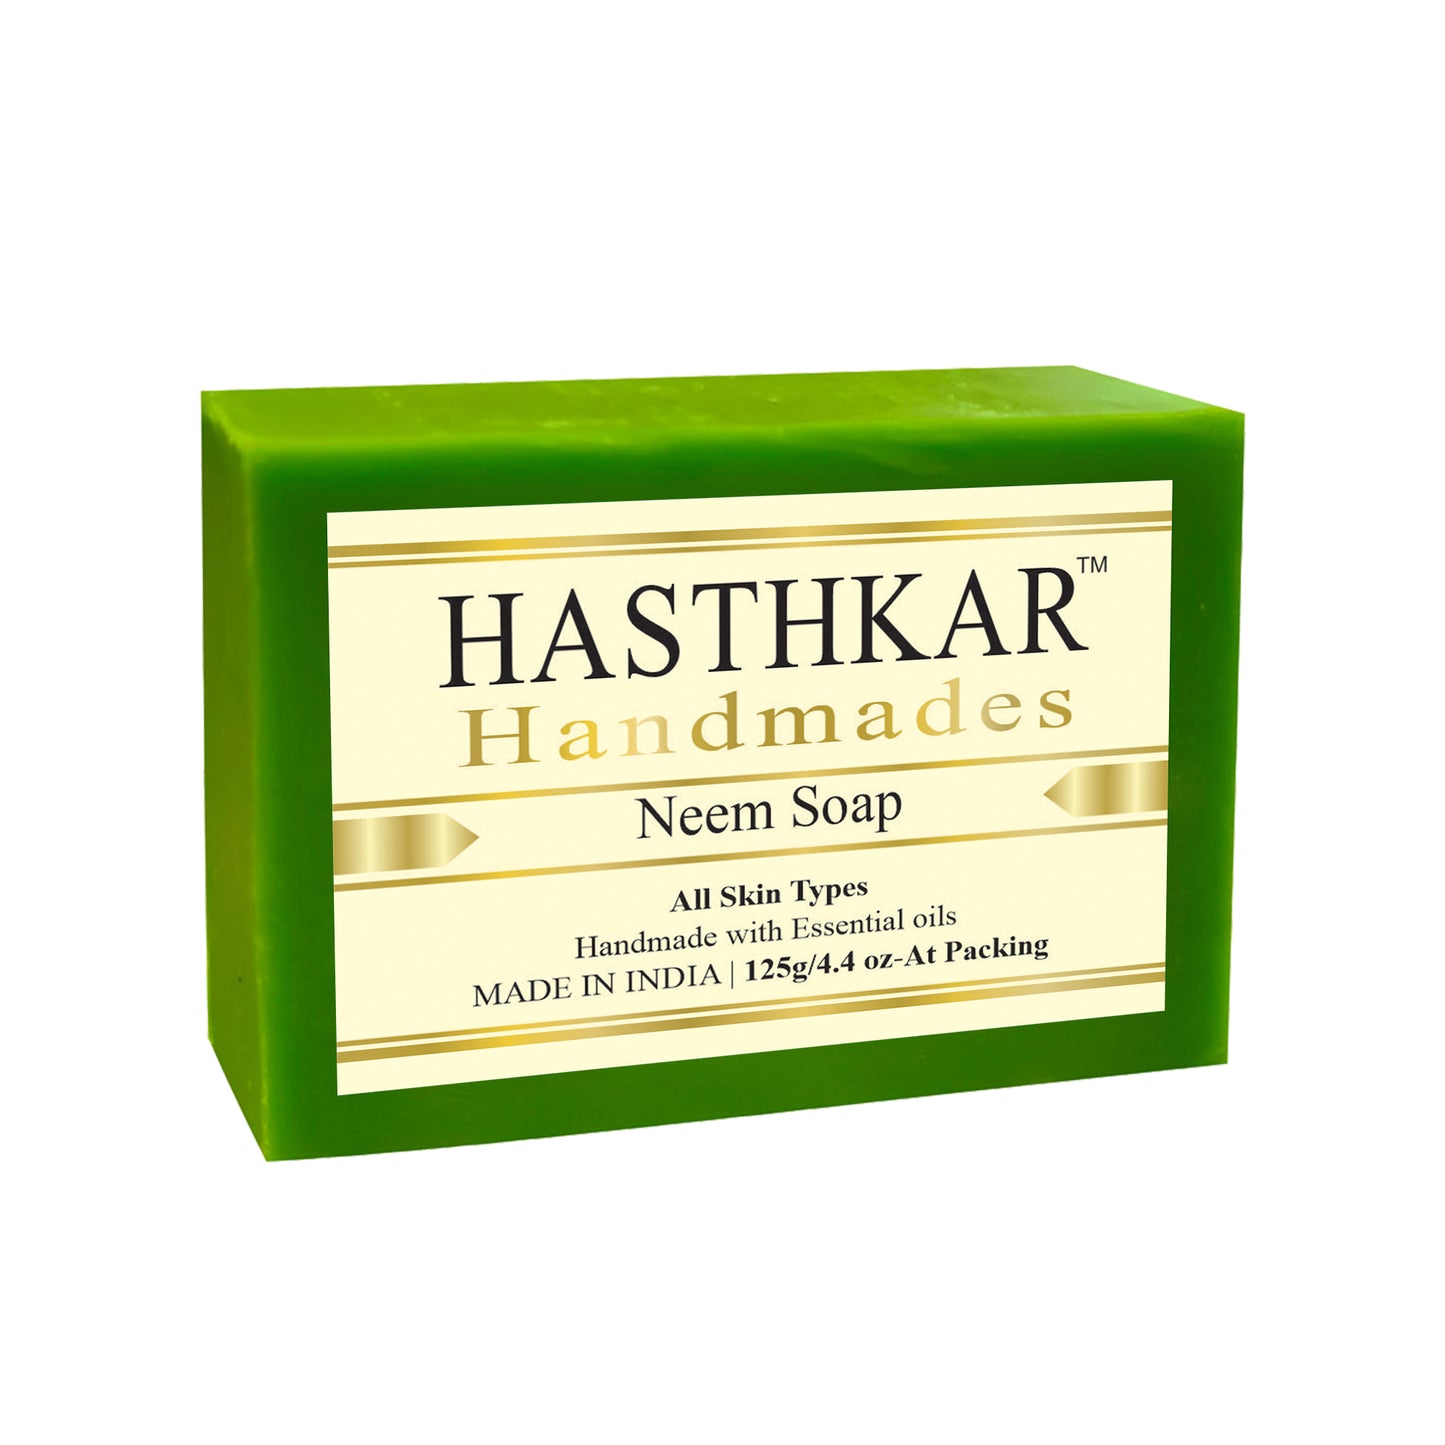 Hasthkar handmades neem bathing soap men women glowing skin